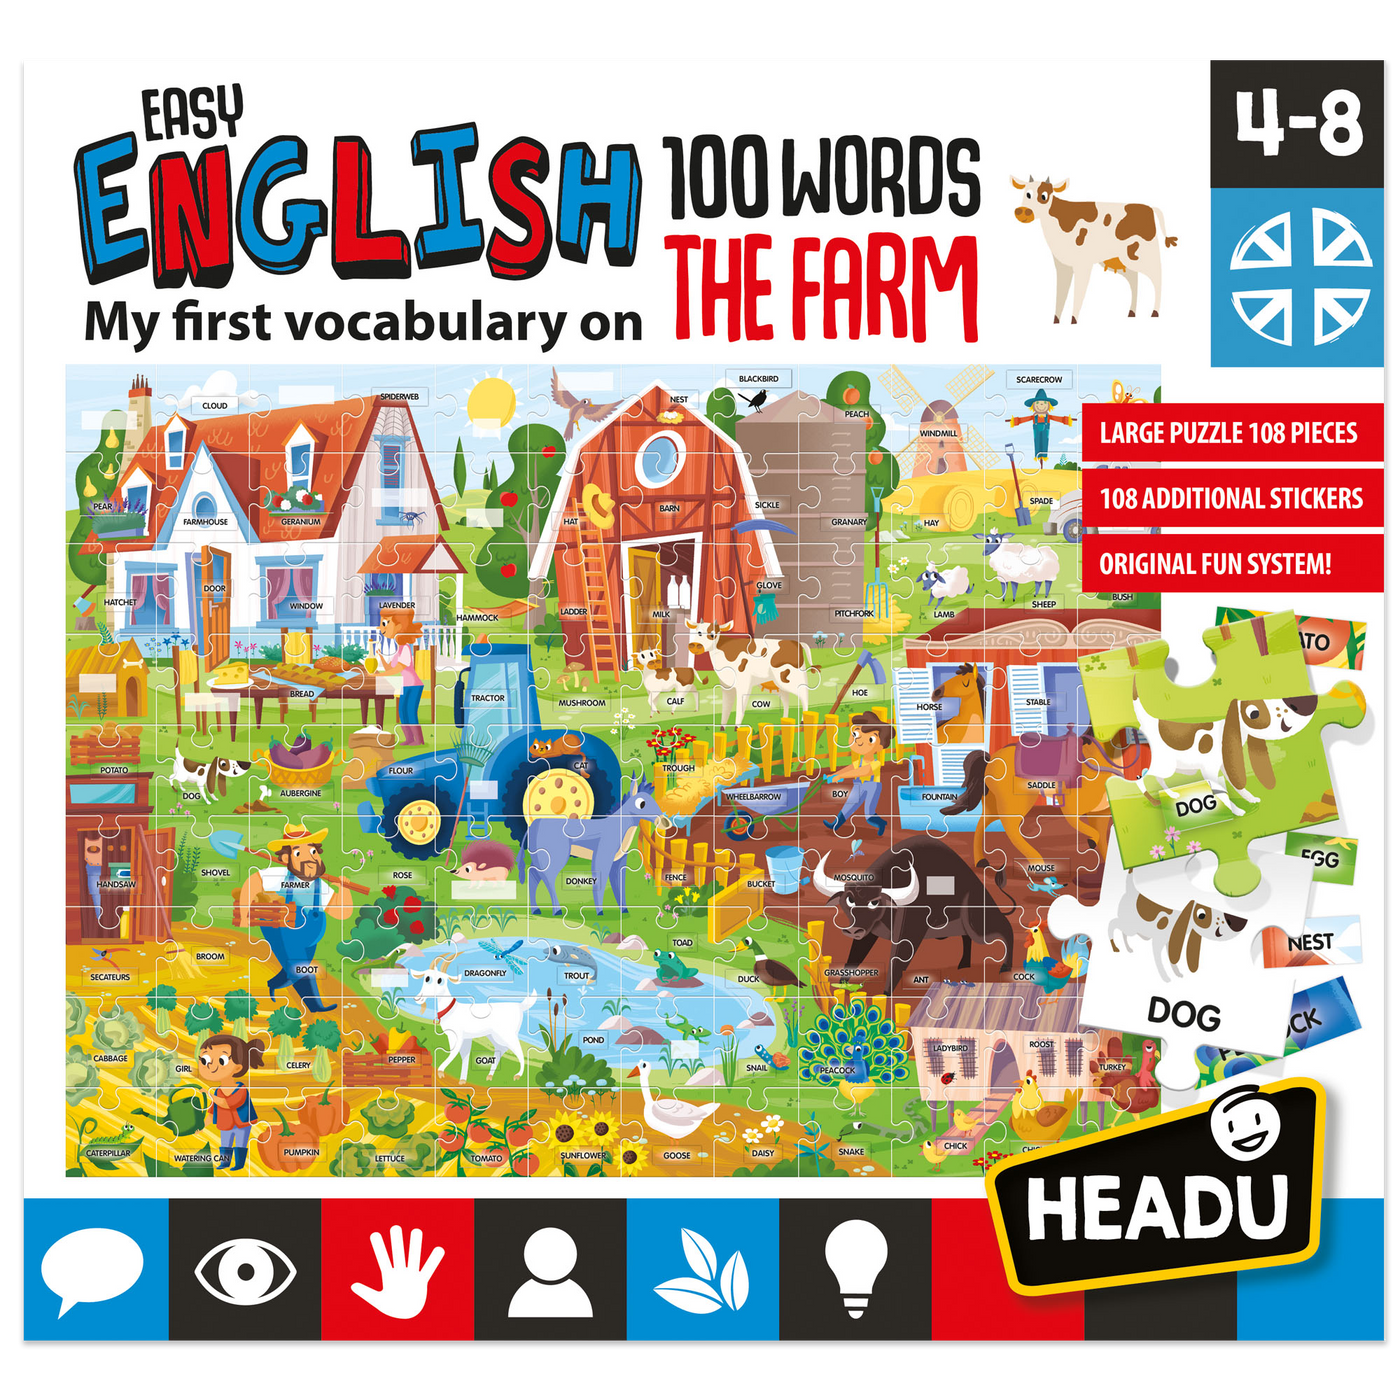 Easy English 100 Words - Farm